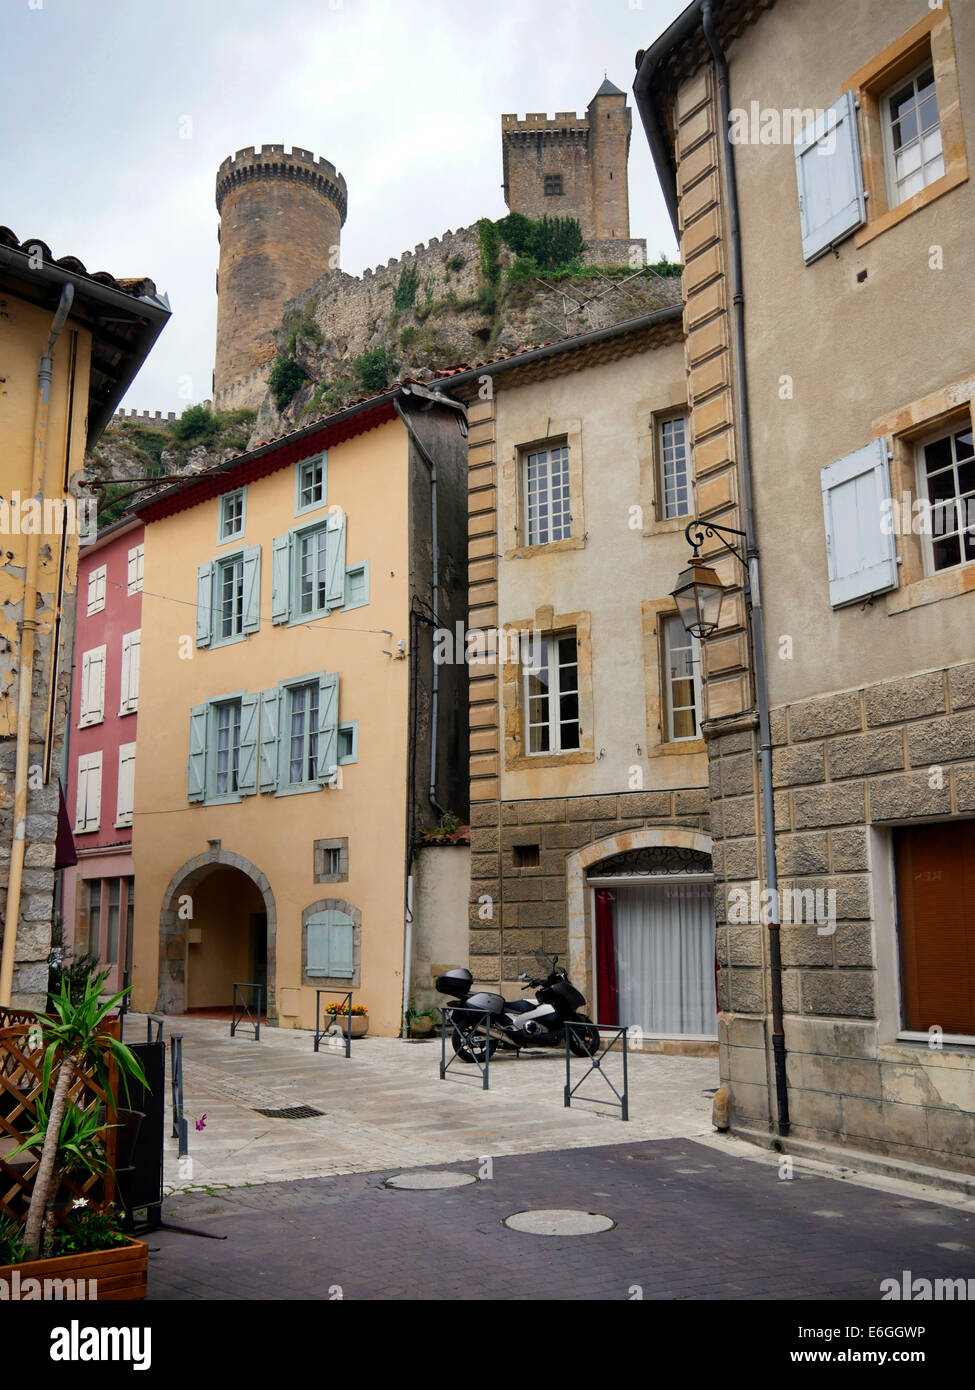 Vieilles rues dans la ville de Foix, France, avec Castle (château) Banque D'Images